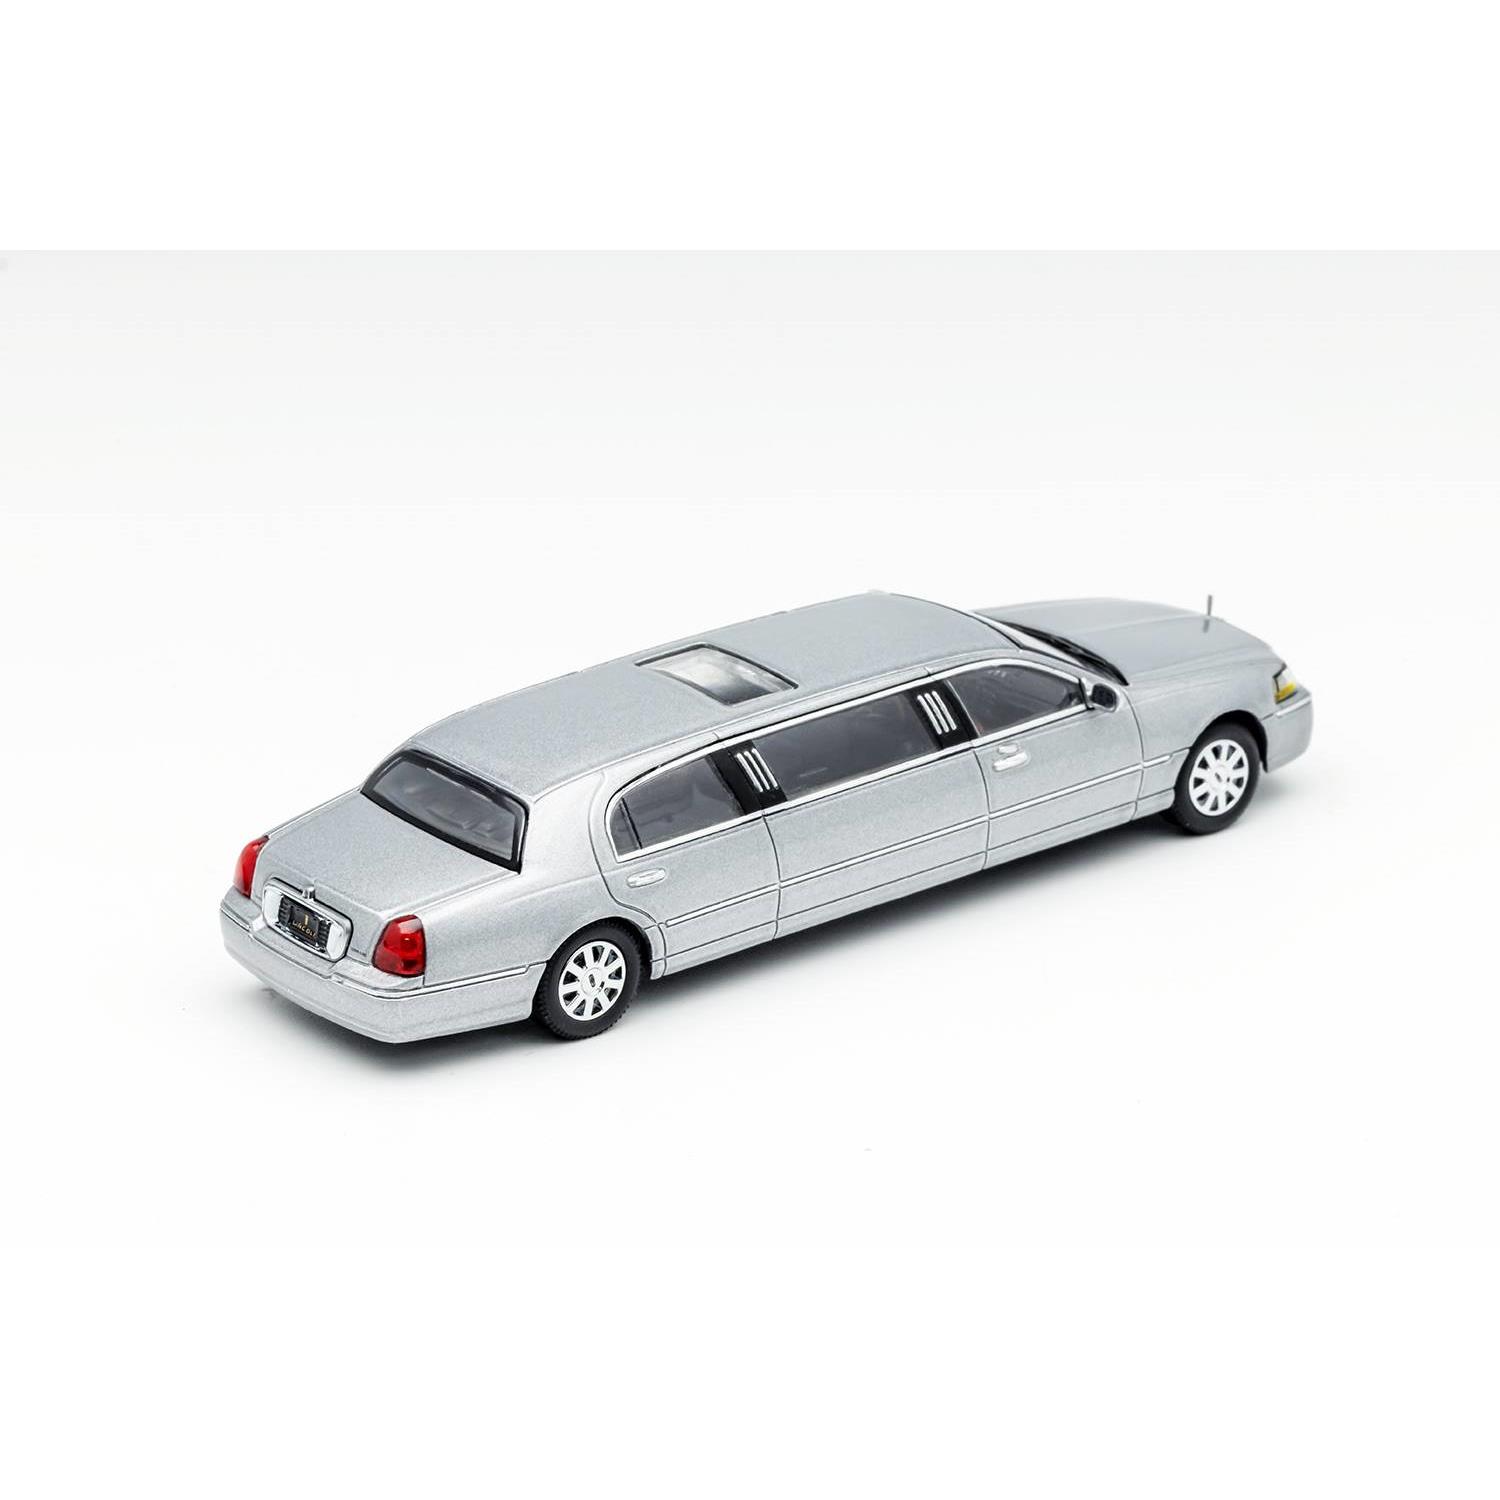 GCD1/64 林肯都市加长版合金汽车模型白黑银色静态摆件模型